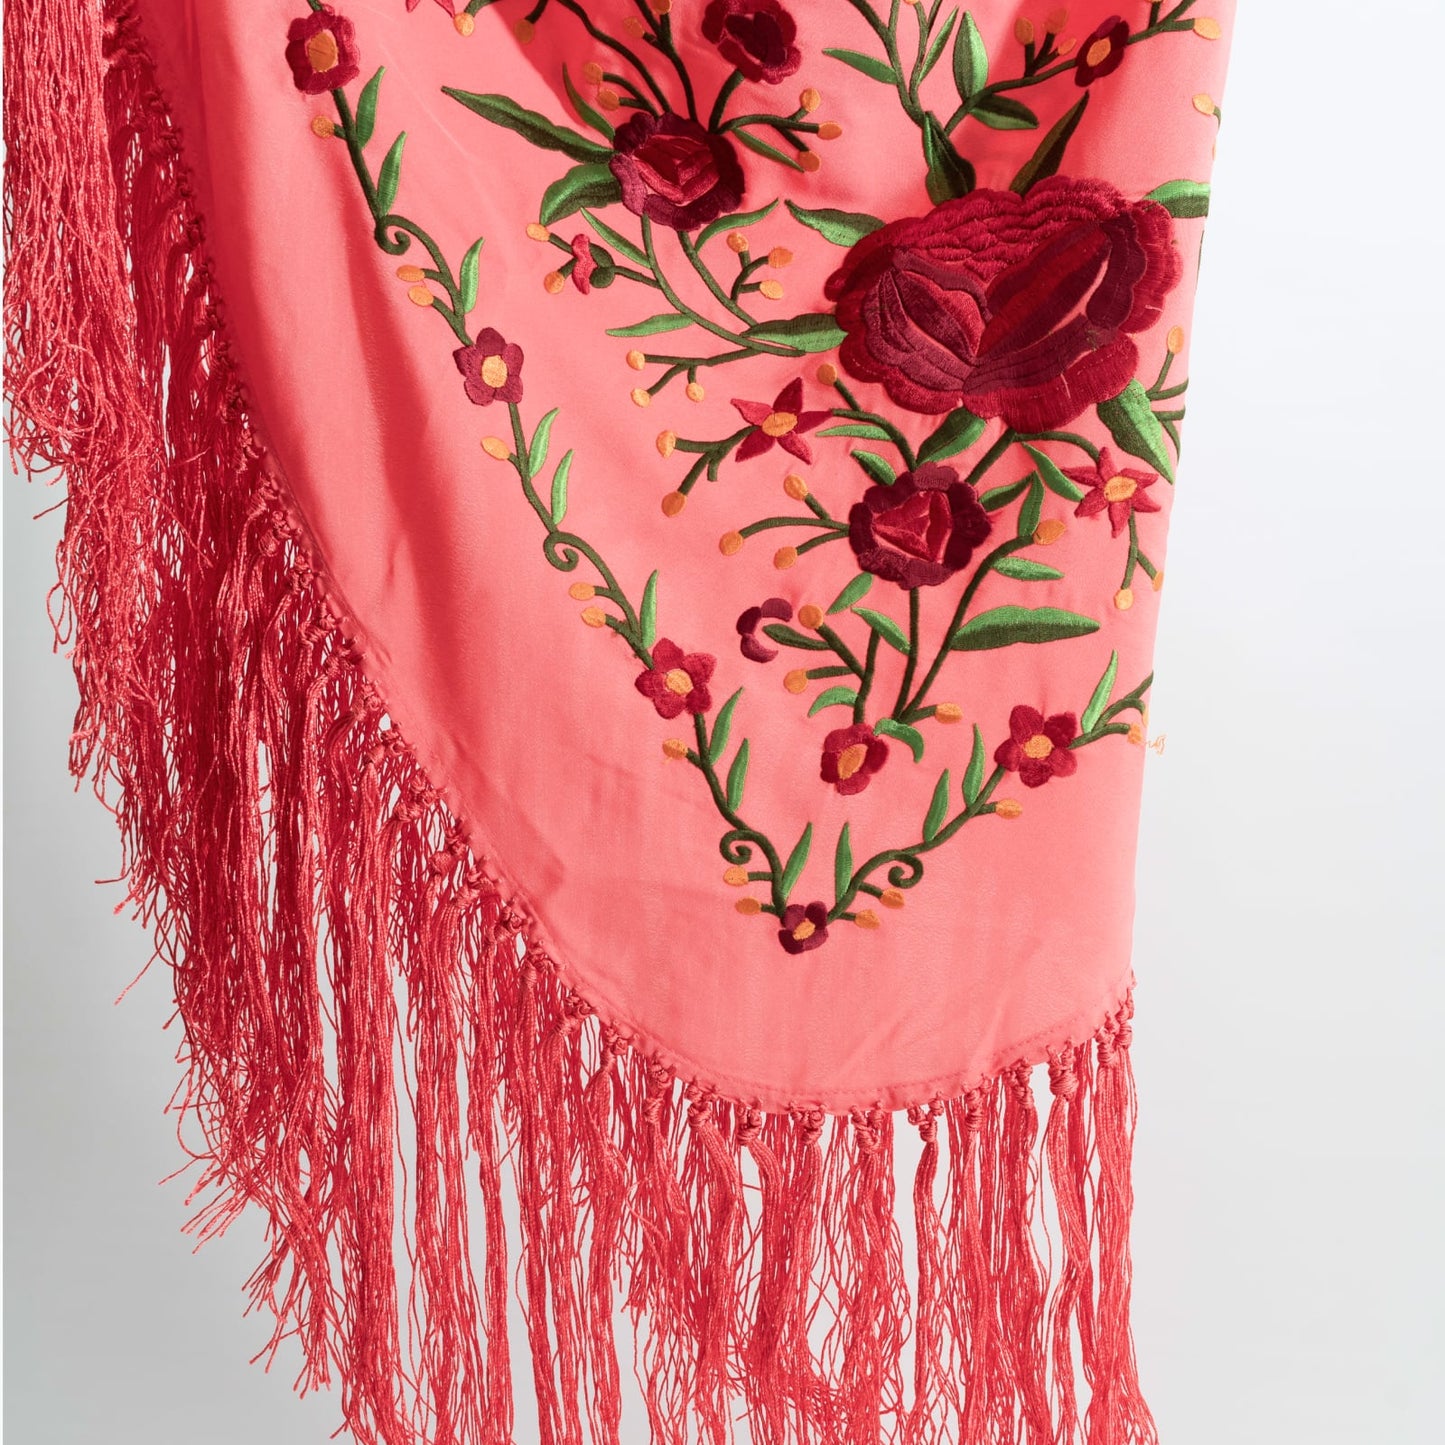 Coral & grana floral embroidered mantoncillo shawl in crespon.